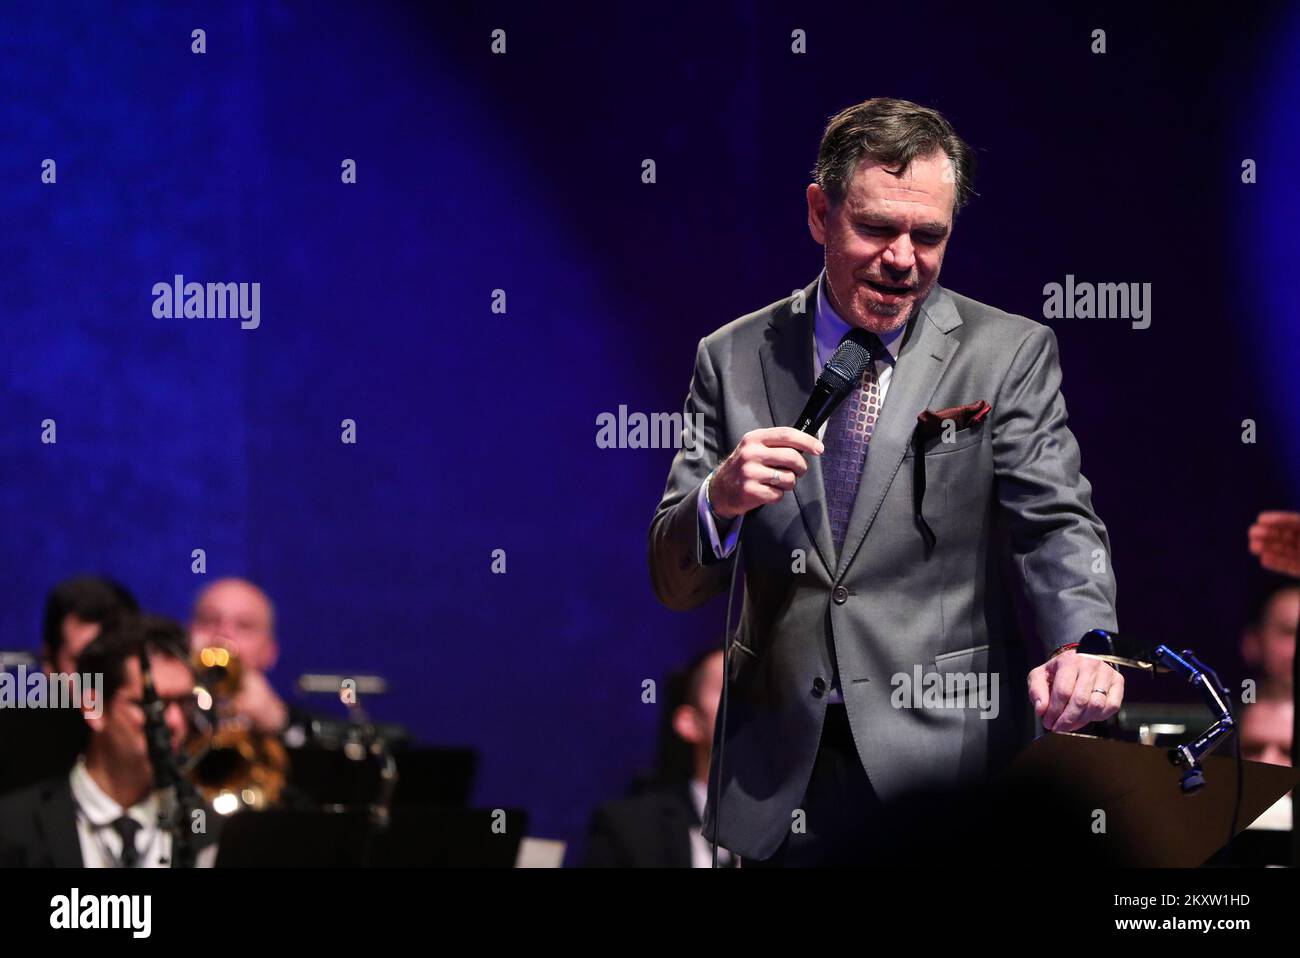 La cantante jazz Kurt Elling, vincitrice della Grammy, ha tenuto un concerto presso la sala concerti Vatroslav Lisinski, a Zagabria, in Croazia, il 7 novembre 2021. Foto: Zeljko Hladika/PIXSELL Foto Stock